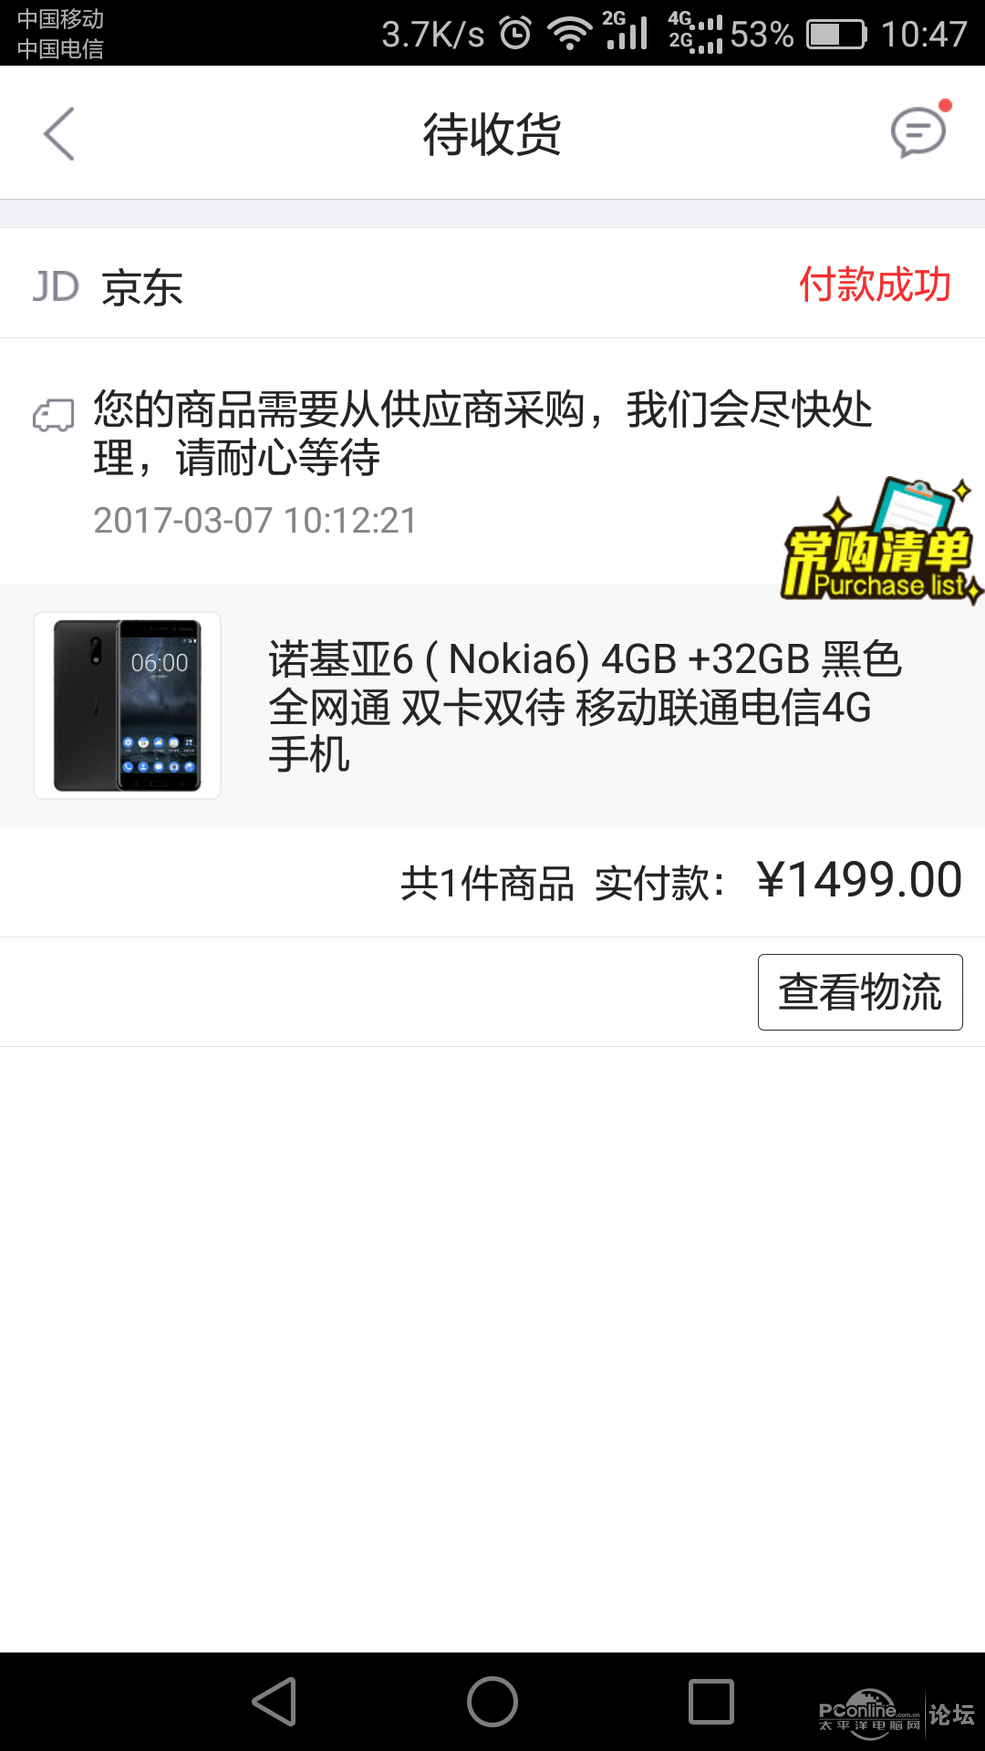 6 (Nokia6) 4GB+32GB 黑色 全网通_二手手机论